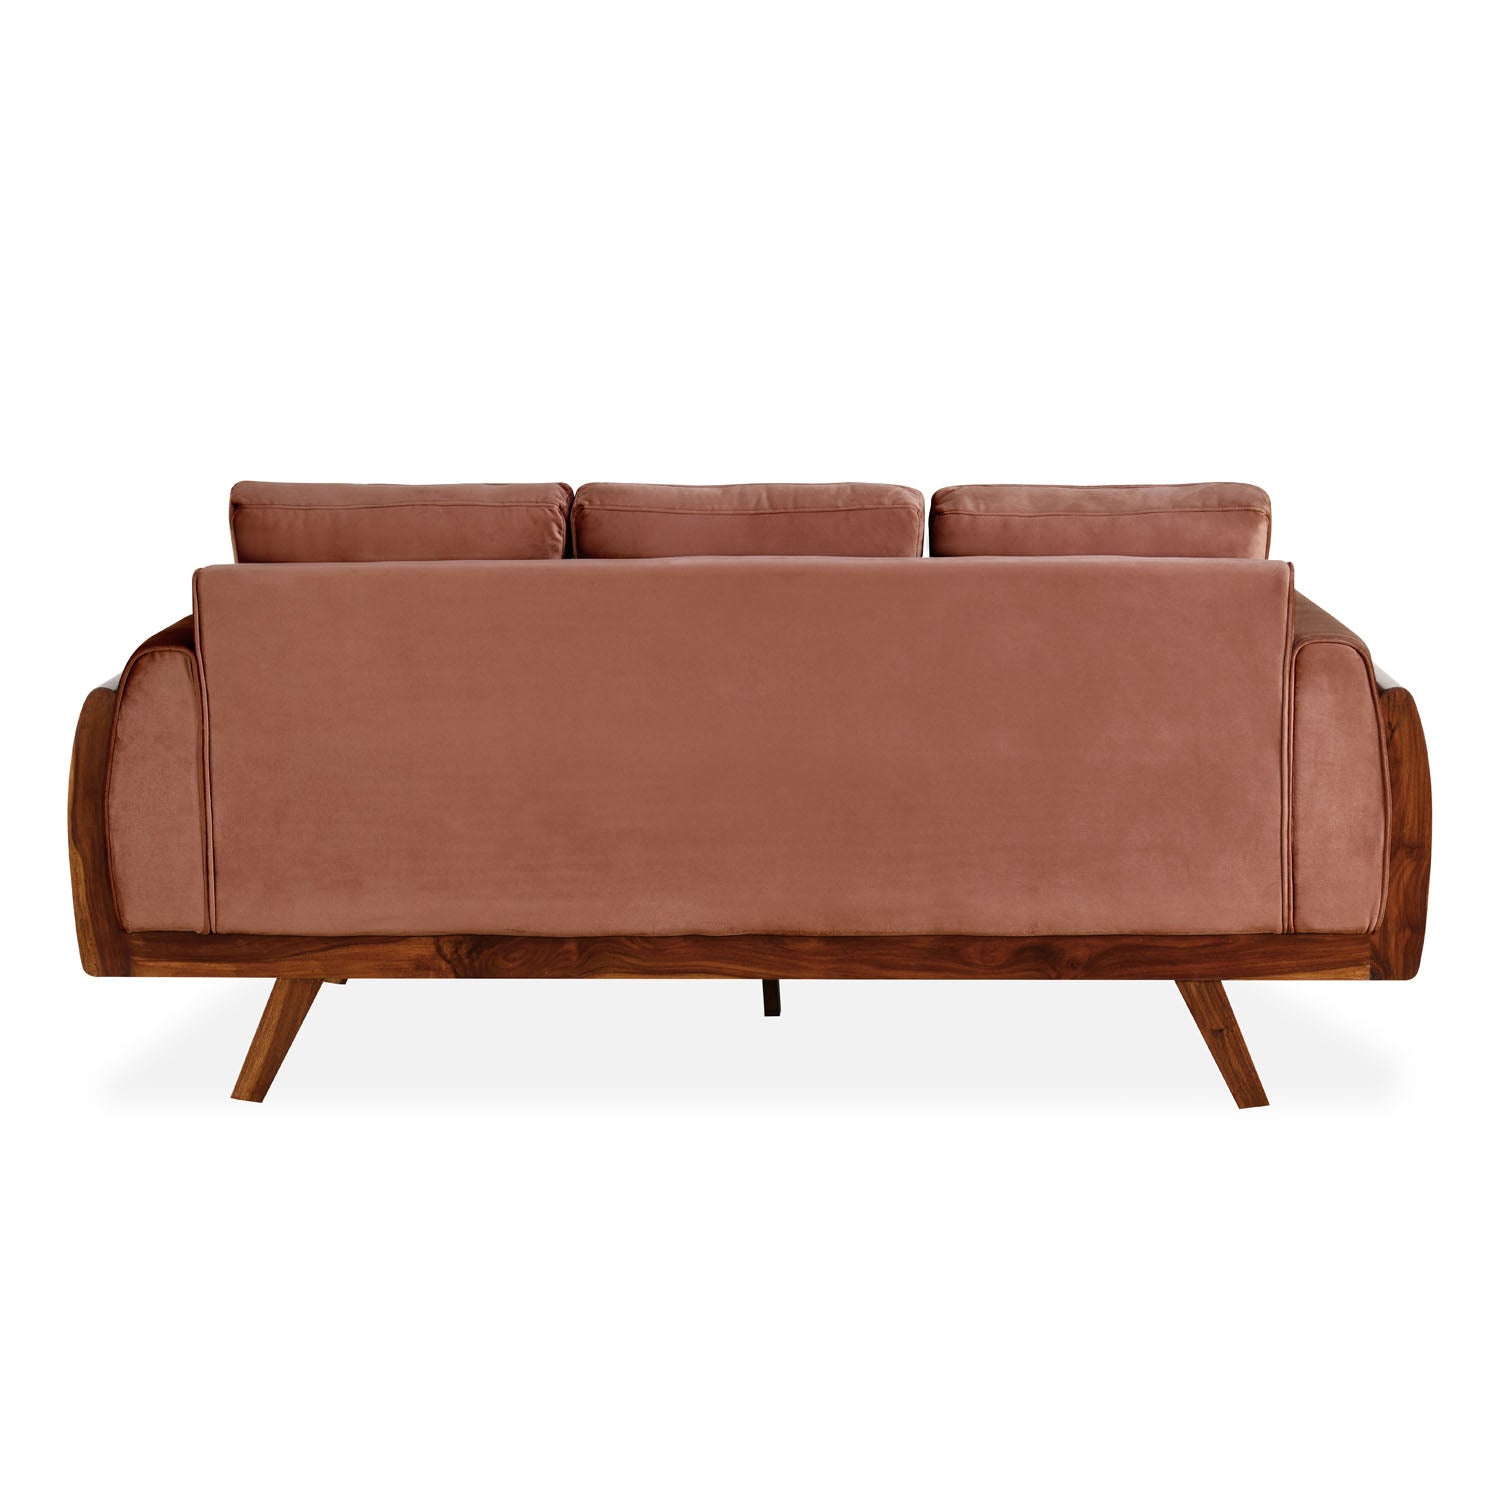 Lakewood 3 Seater Fabric Sofa (Cocoa)